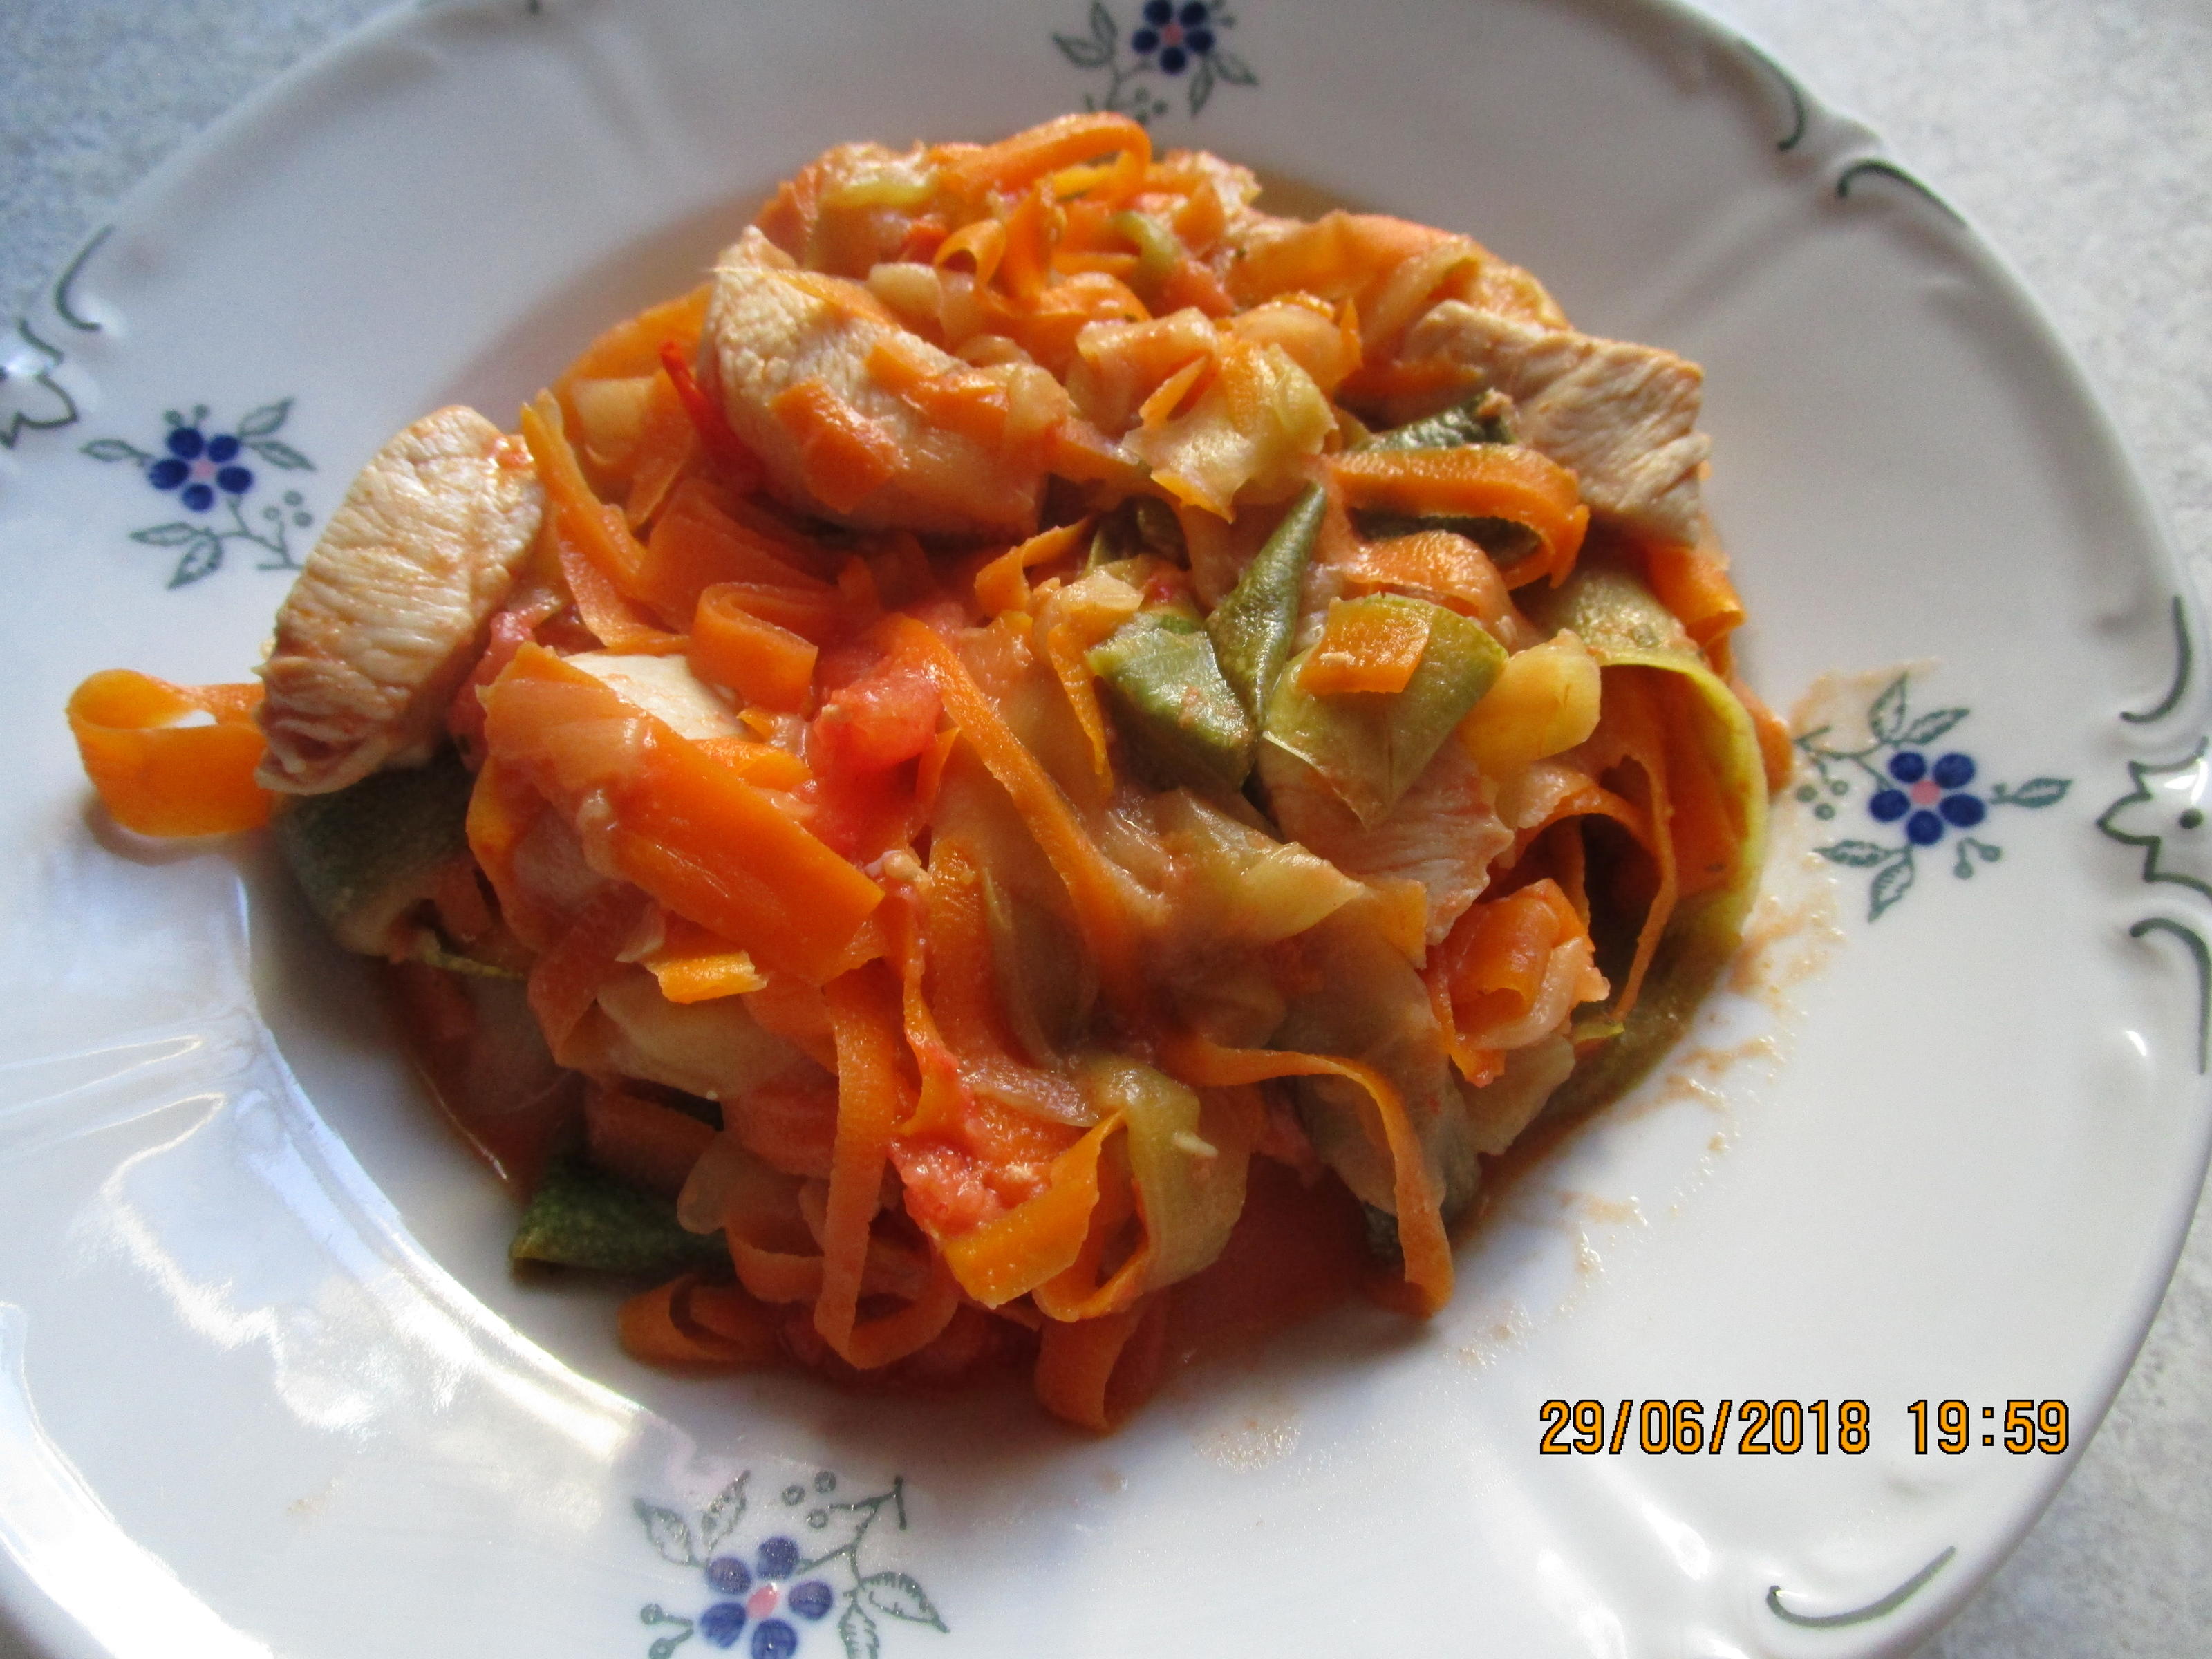 Hähnchenbrust m. Filet zu Bandnudeln aus Zucchini/Möhren und
Tomatensauce - Rezept Eingereicht von federkiel